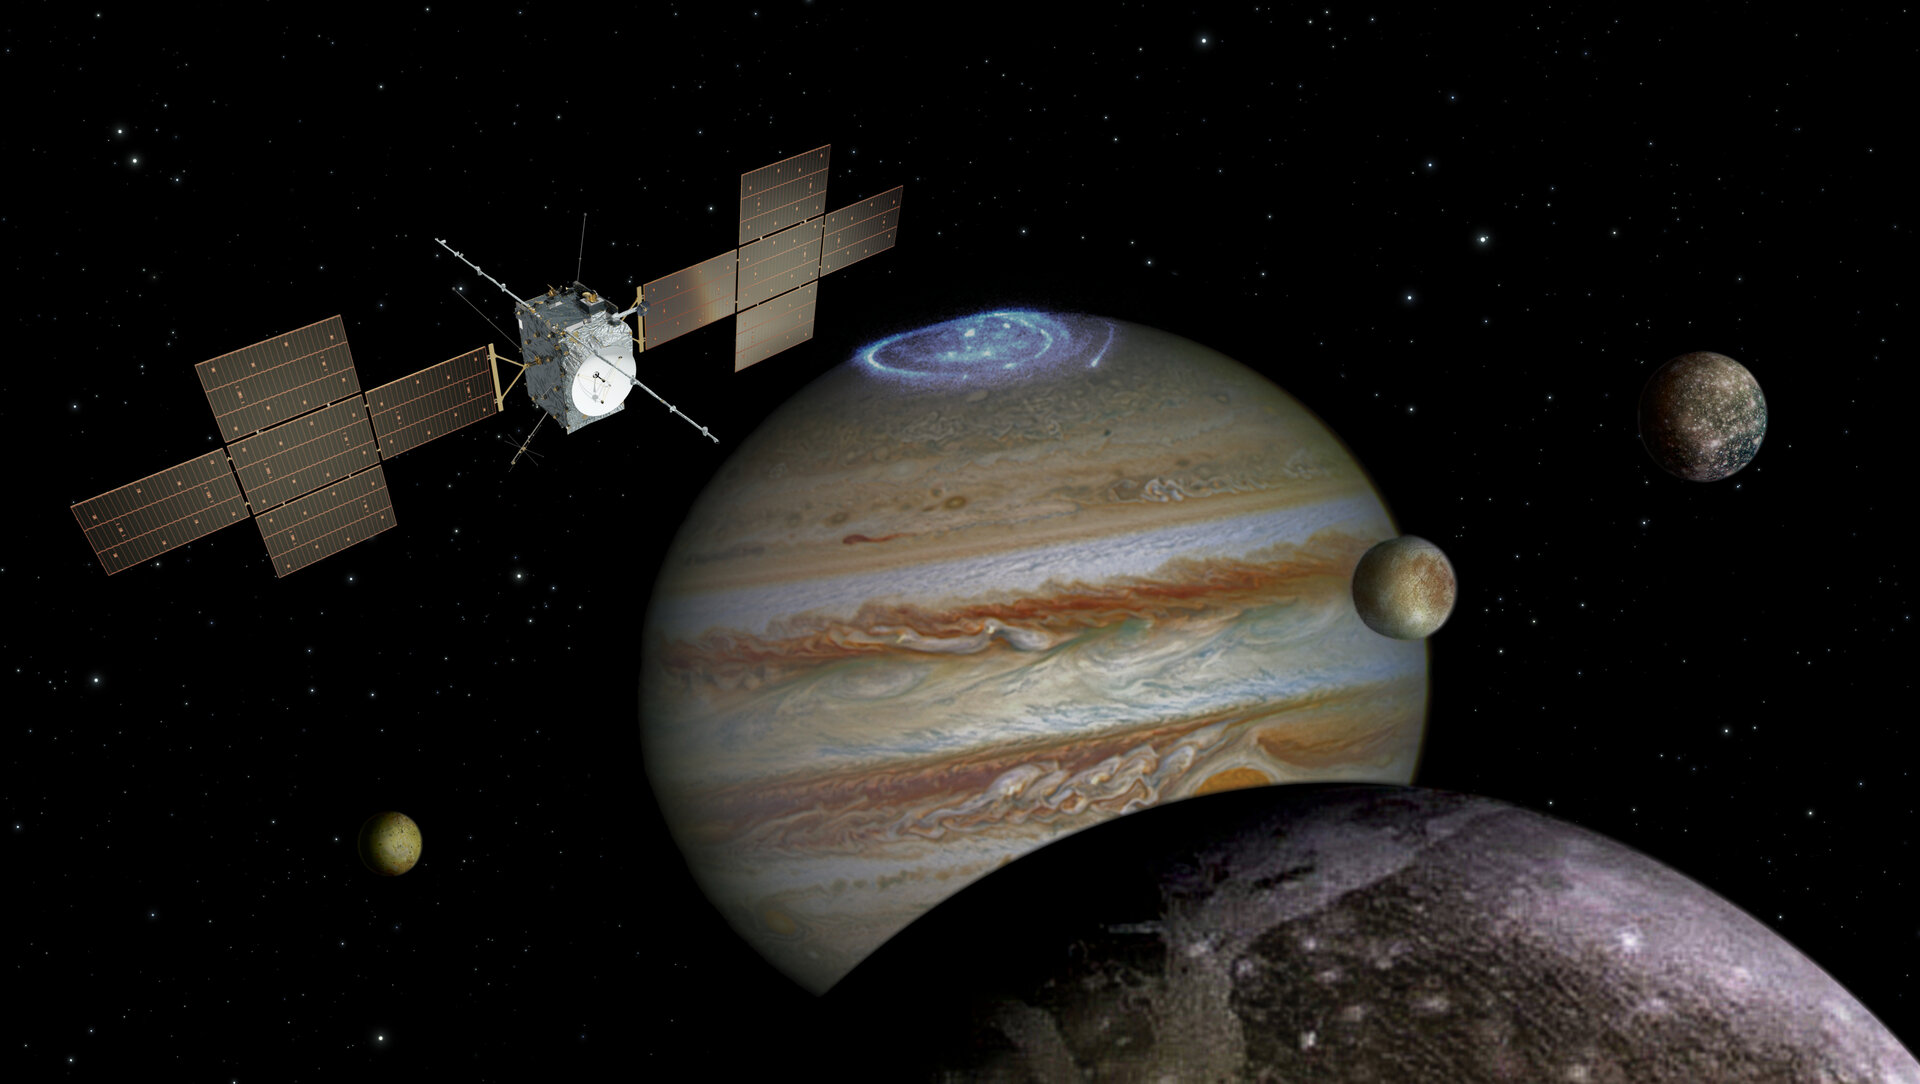 Миссия JUICE Европейского космического агентства начнется в 2023 году и, наконец, выйдет на орбиту вокруг Ганимеда в 2034 году. Она изучит Европу и Ганимед в беспрецедентных деталях.